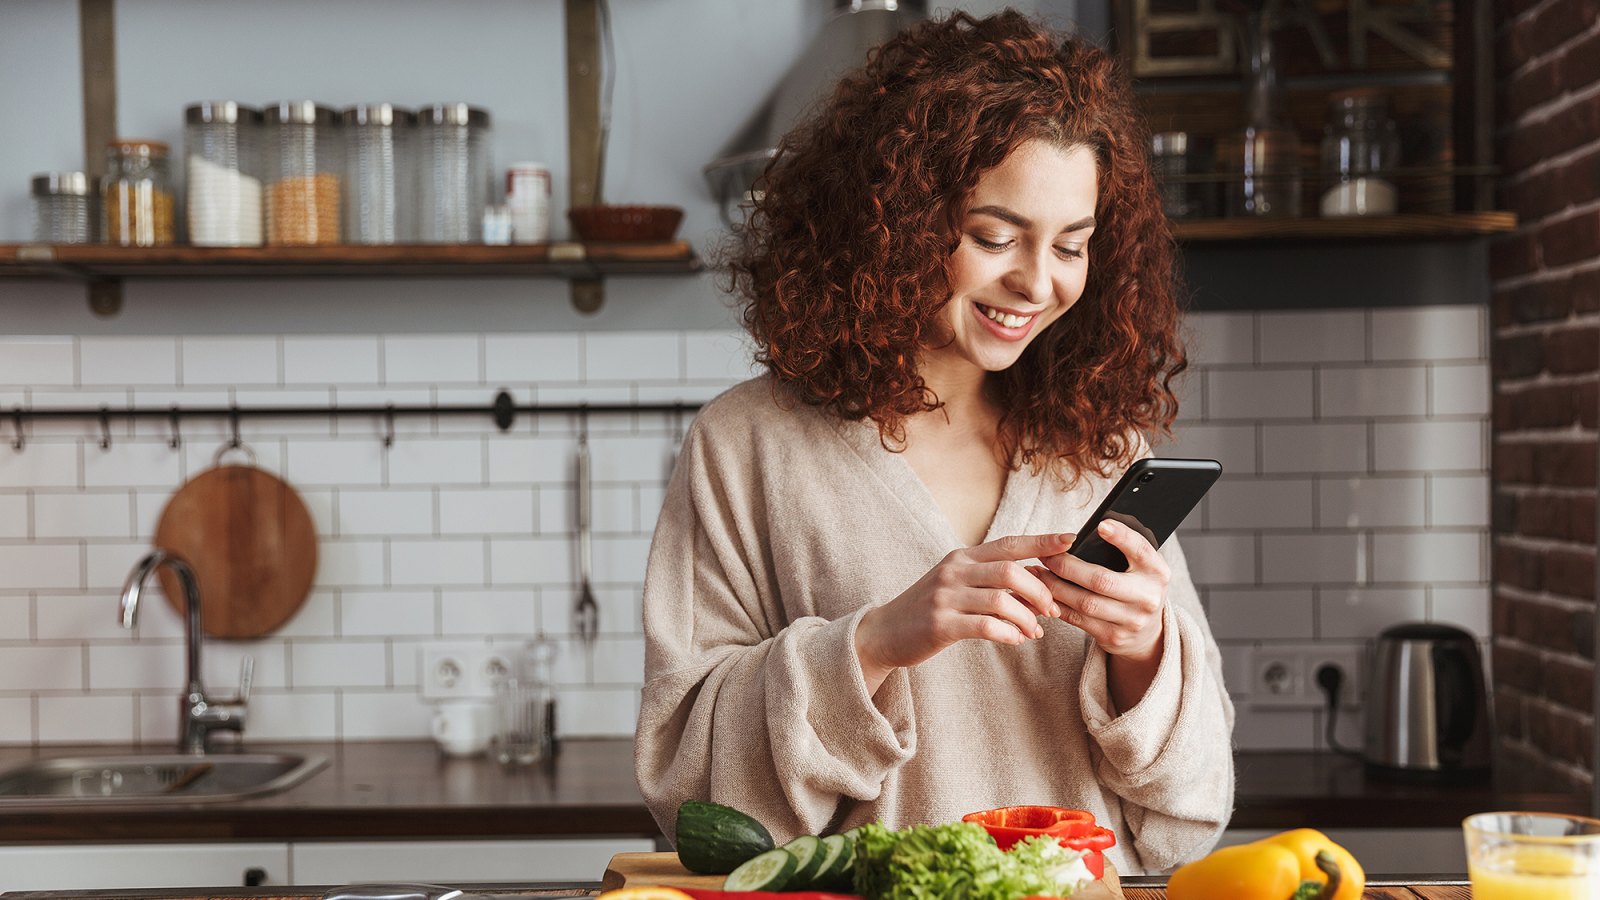 ww-digital-360-woman-health-food-app